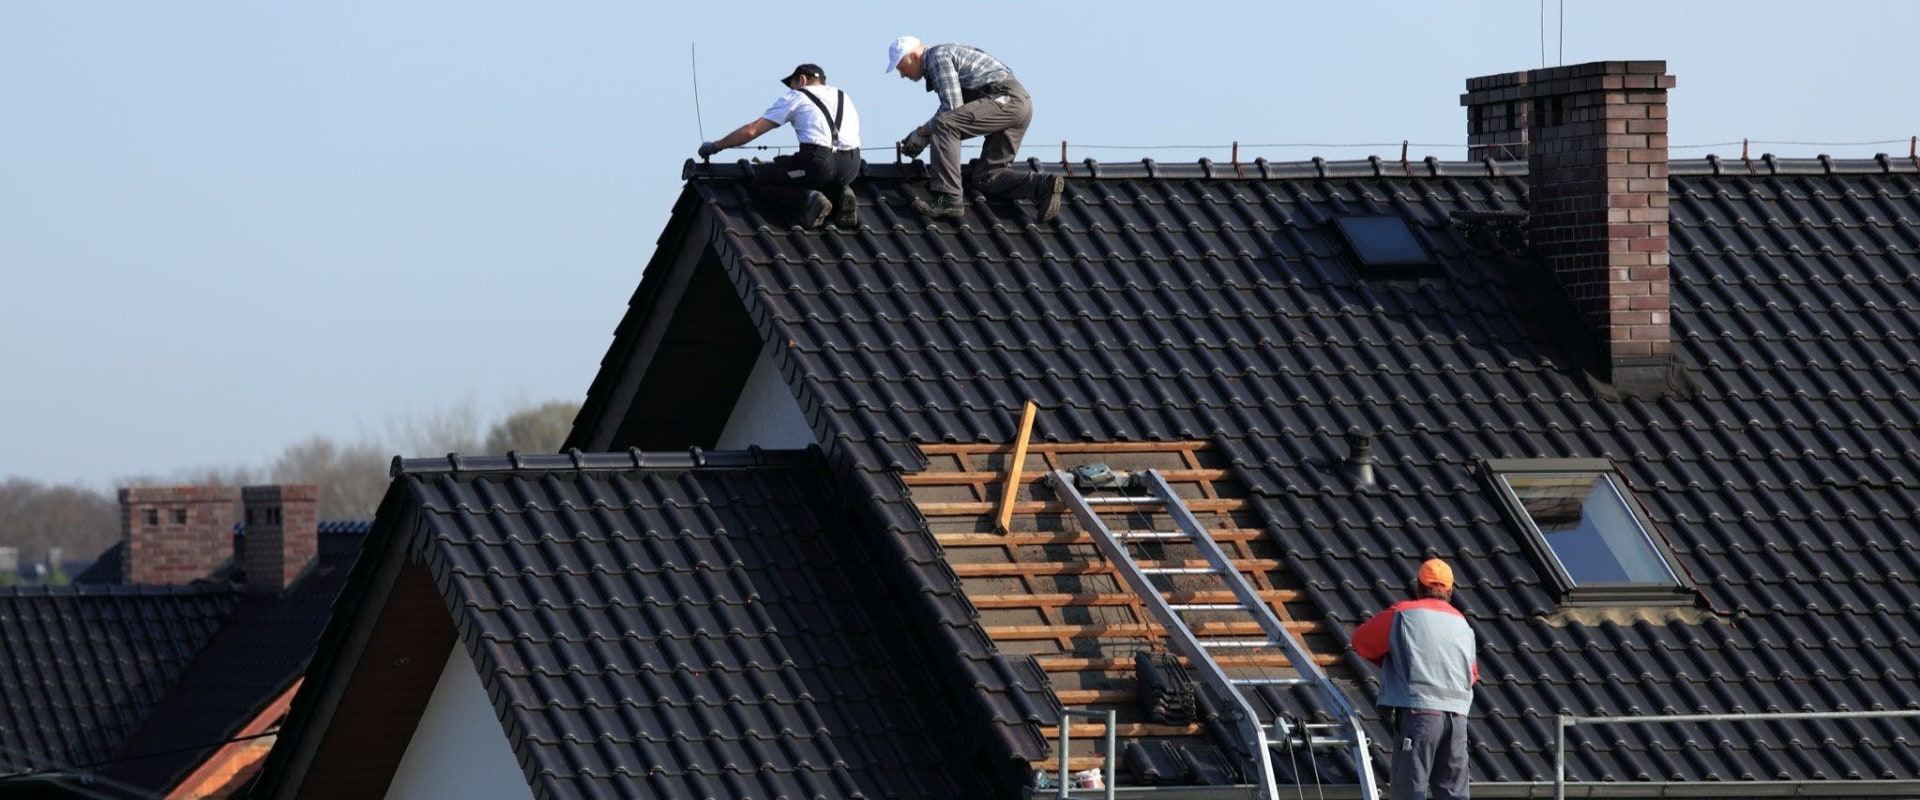 Is de verkoop van dakbedekkingen moeilijk?